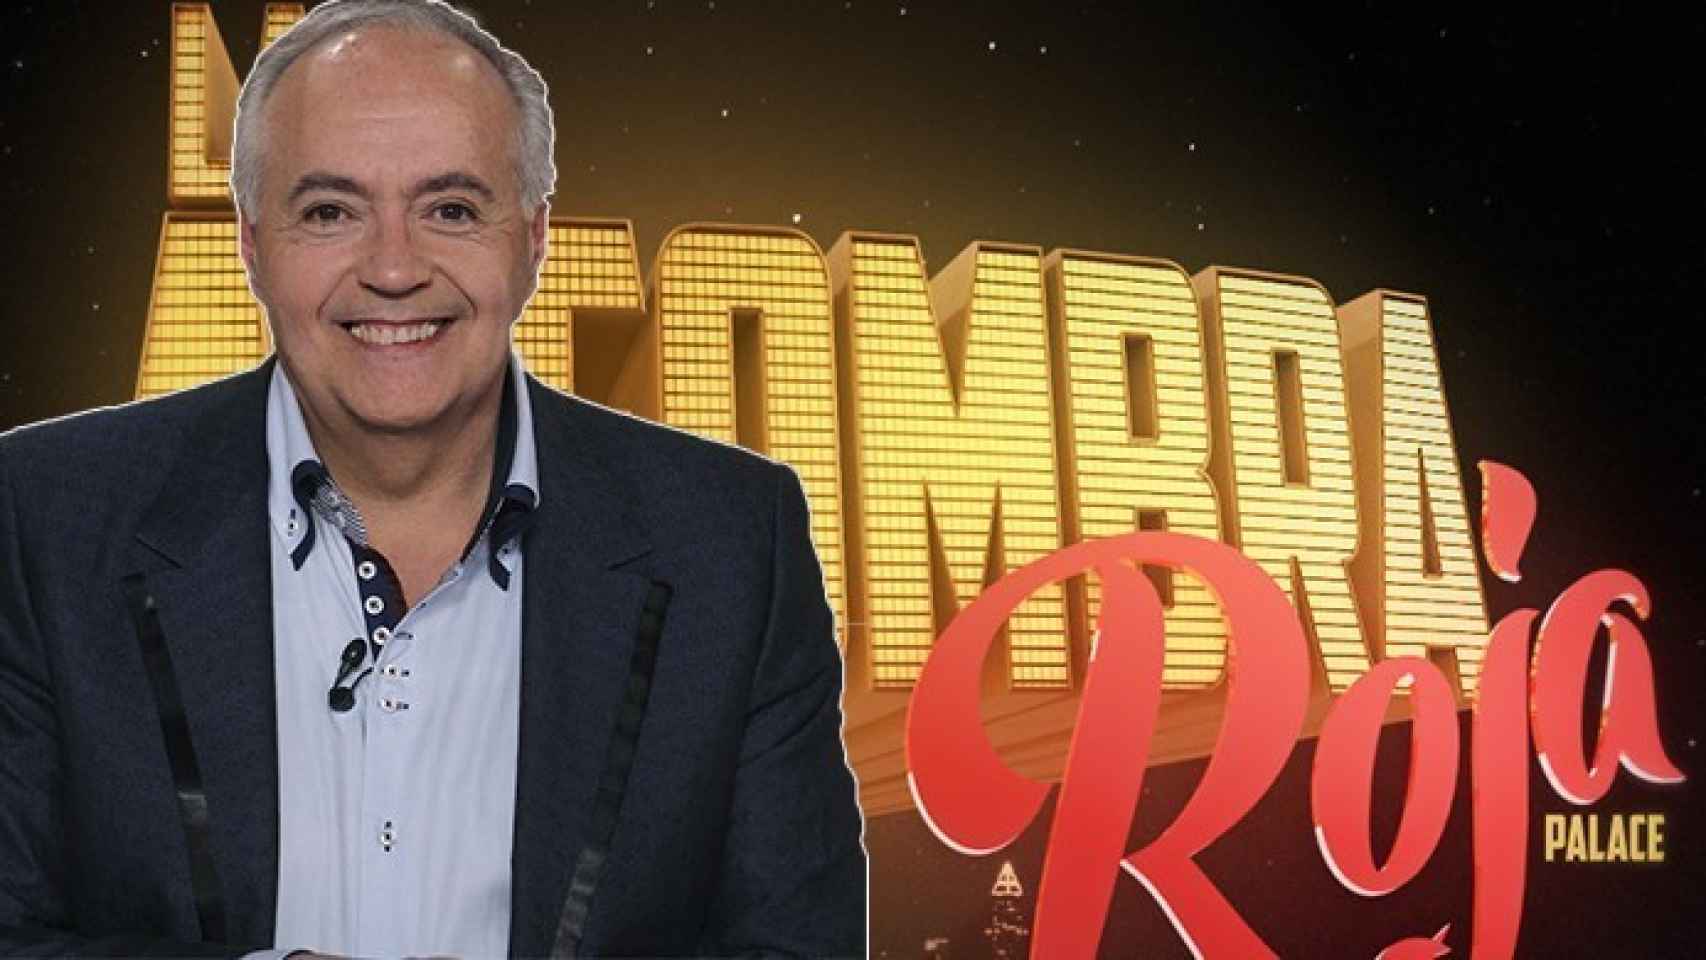 La Alfombra Roja, el último programa de Moreno fue cancelado por TVE, por el fracaso de audiencia